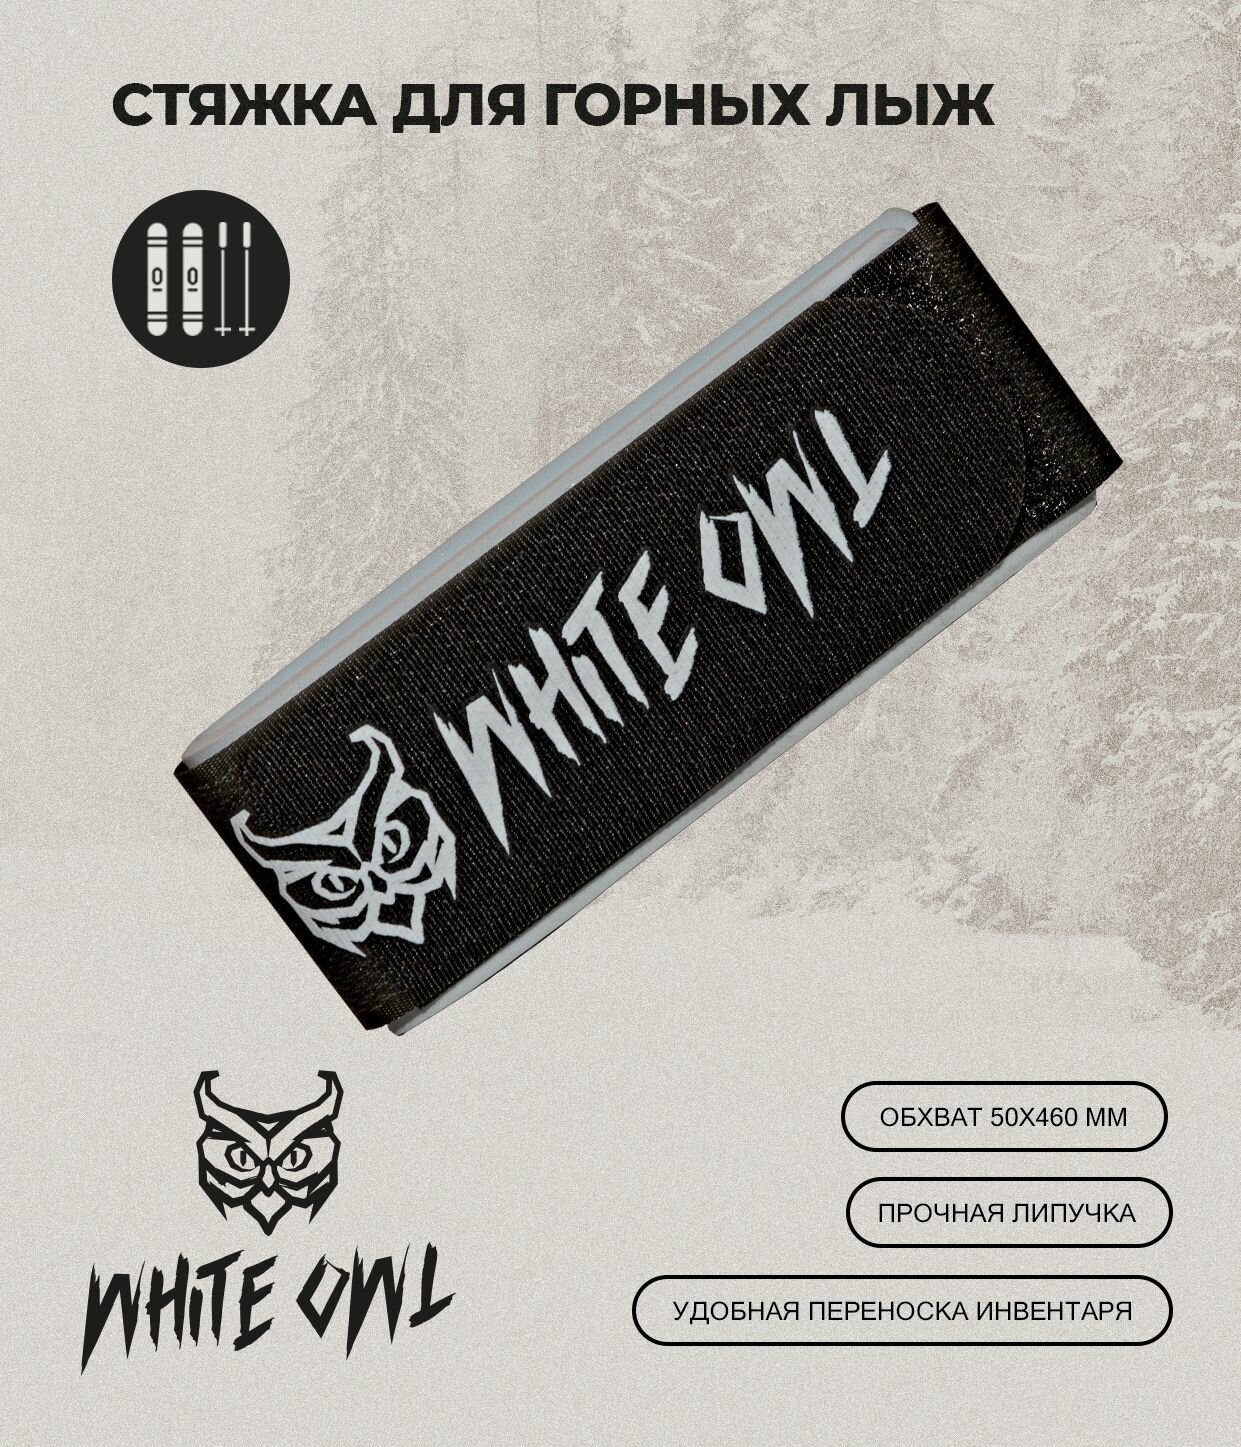 Связки для горных лыж White Owl KNG-OZ, размер сцепки 50х460 мм, серый-черный